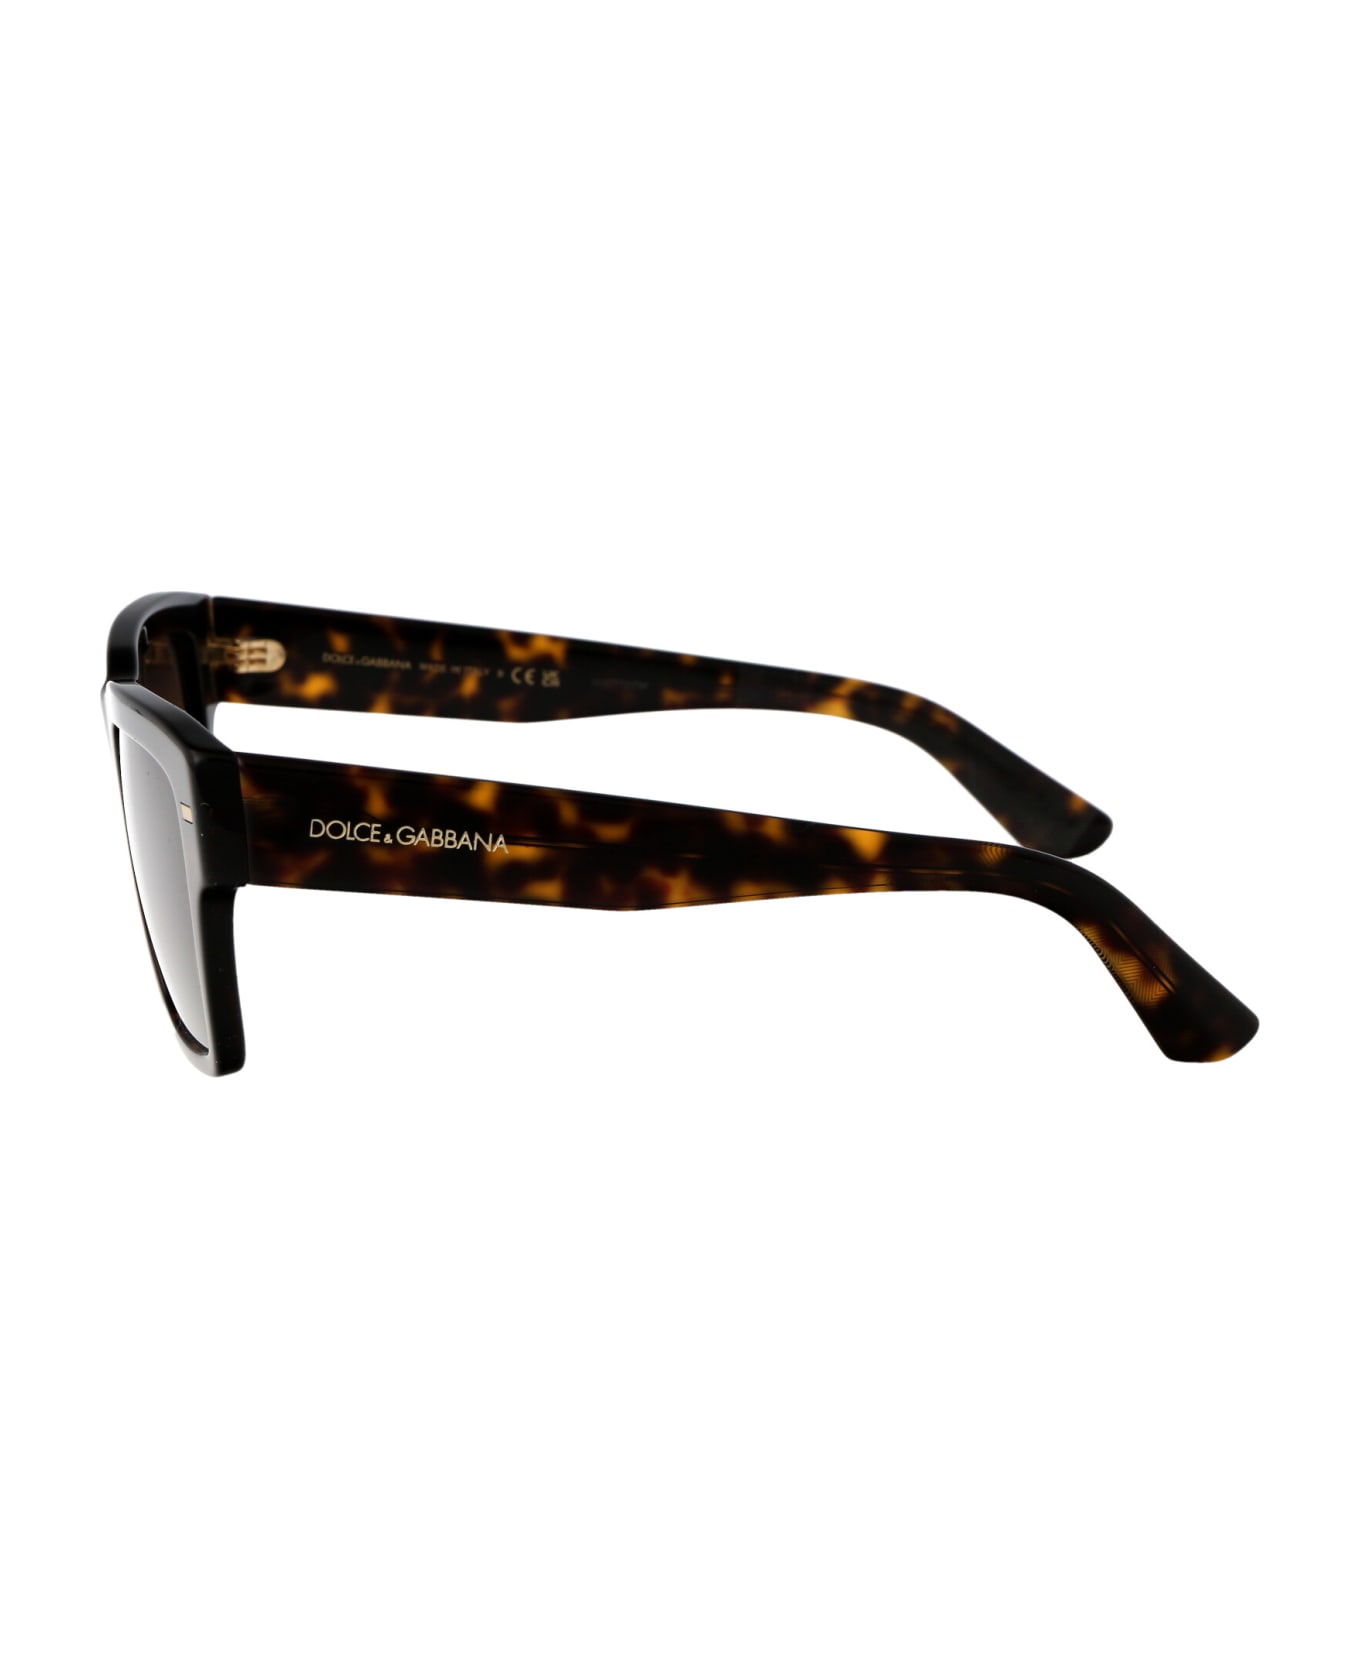 Dolce & Gabbana Eyewear 0dg4431 Sunglasses - 502/73 HAVANA